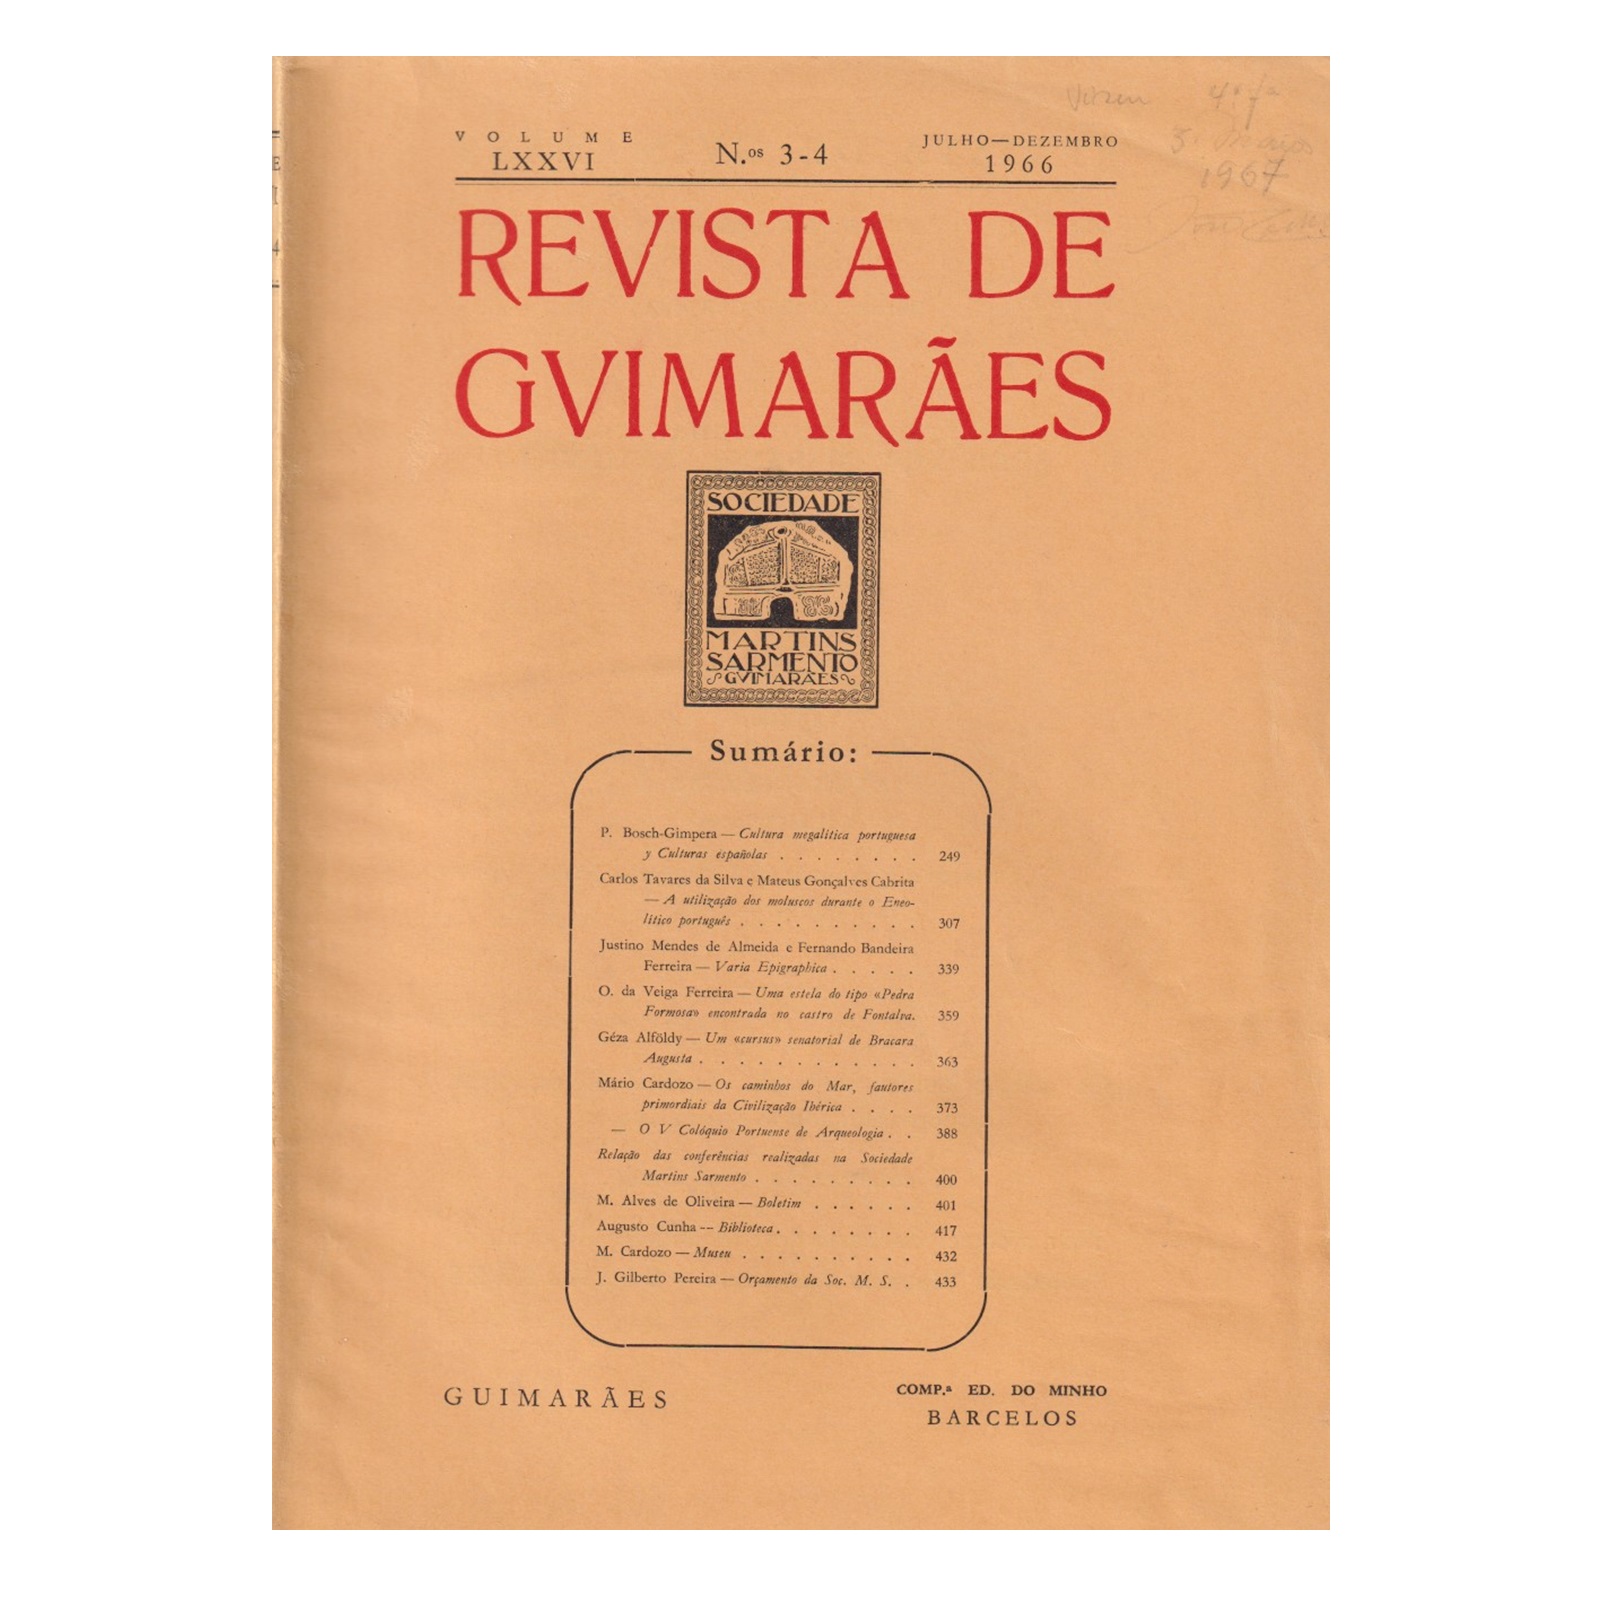 REVISTA DE GUIMARÃES. VOL. LXXVI. N.º 3-4, 1966